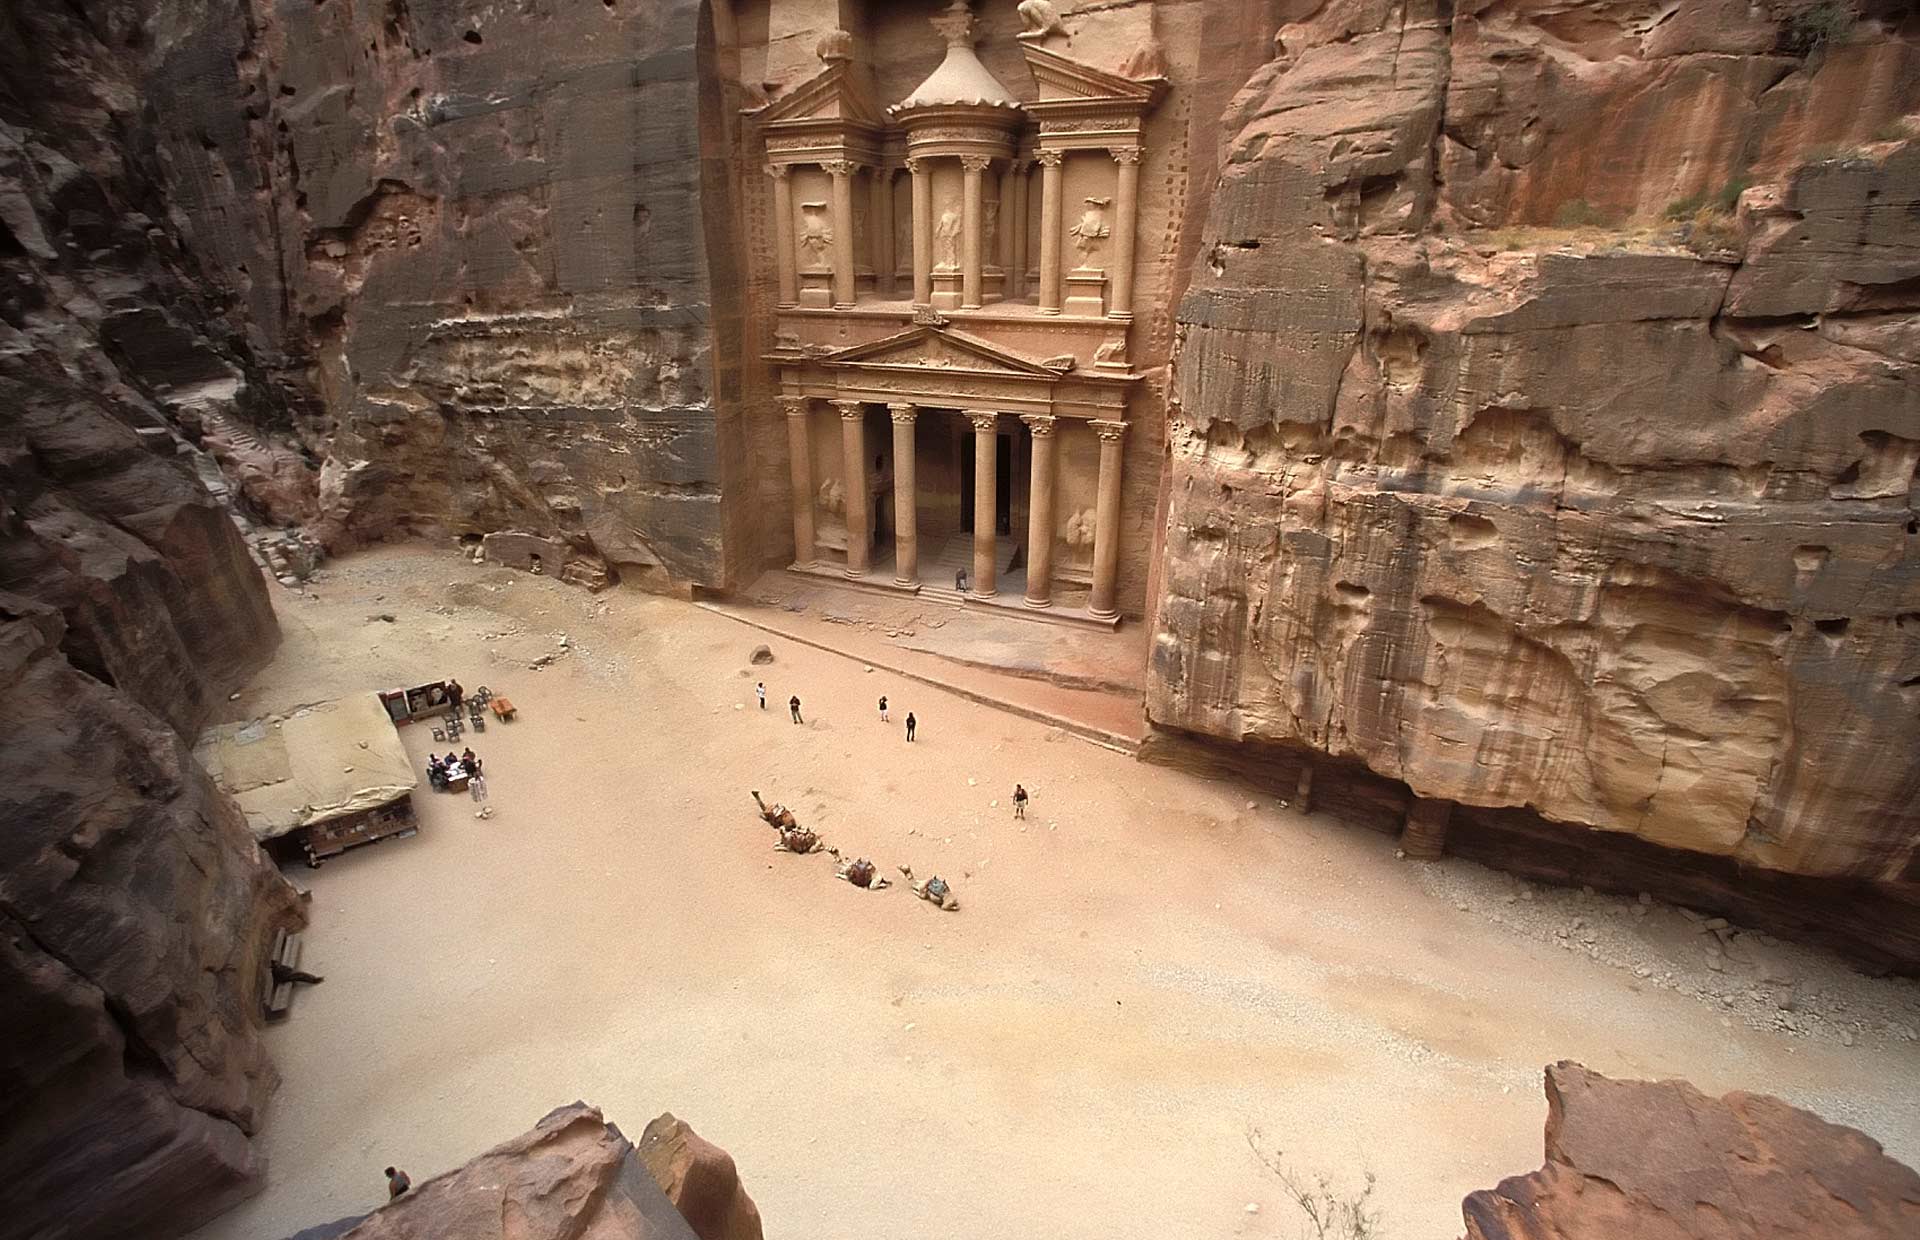 Al-Khasneh (The Treasury), as seen from a surrounding rock cliff, Petra, Jordan